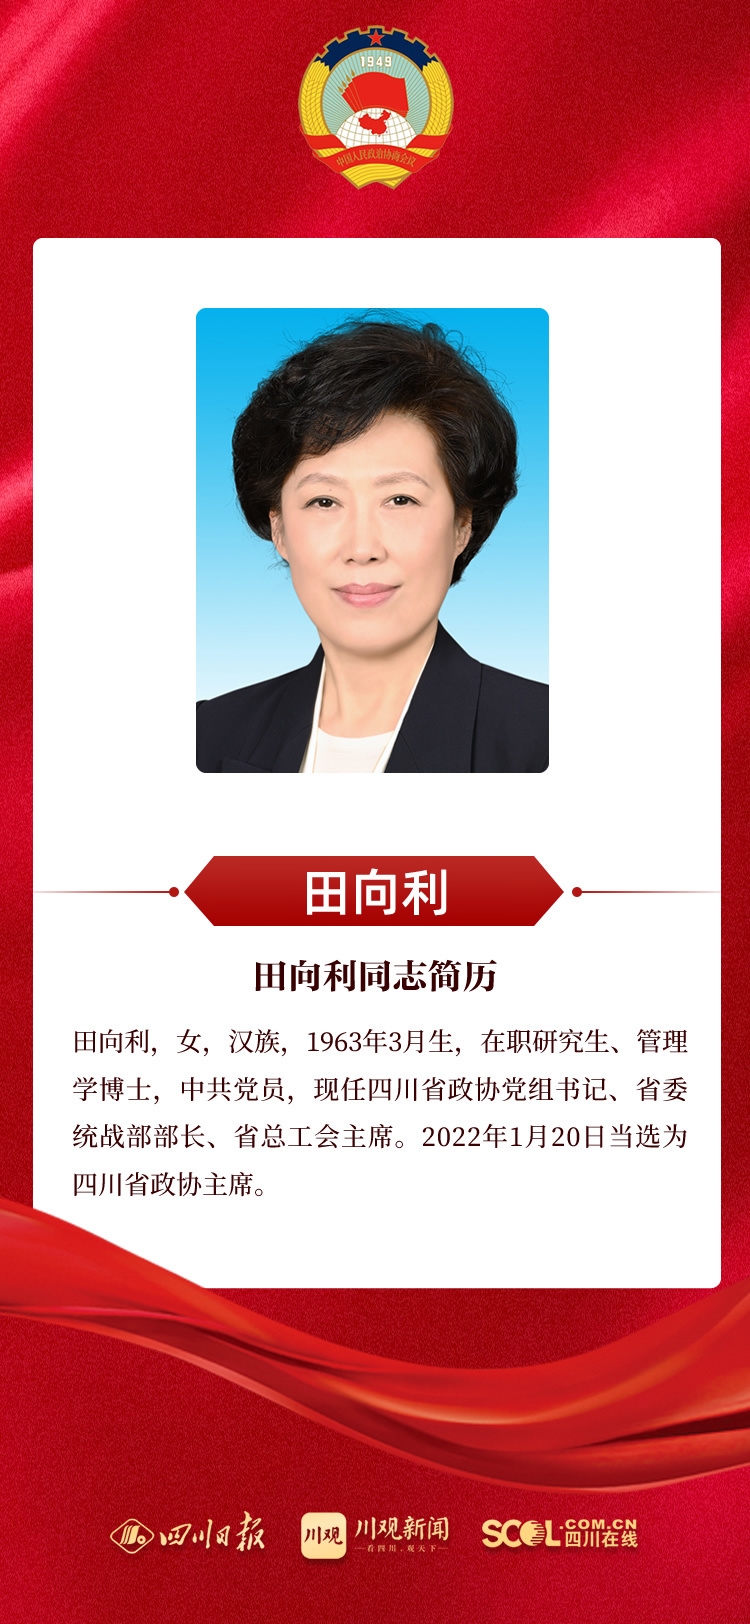 新当选的政协四川省第十二届委员会主席、副主席、常委名单